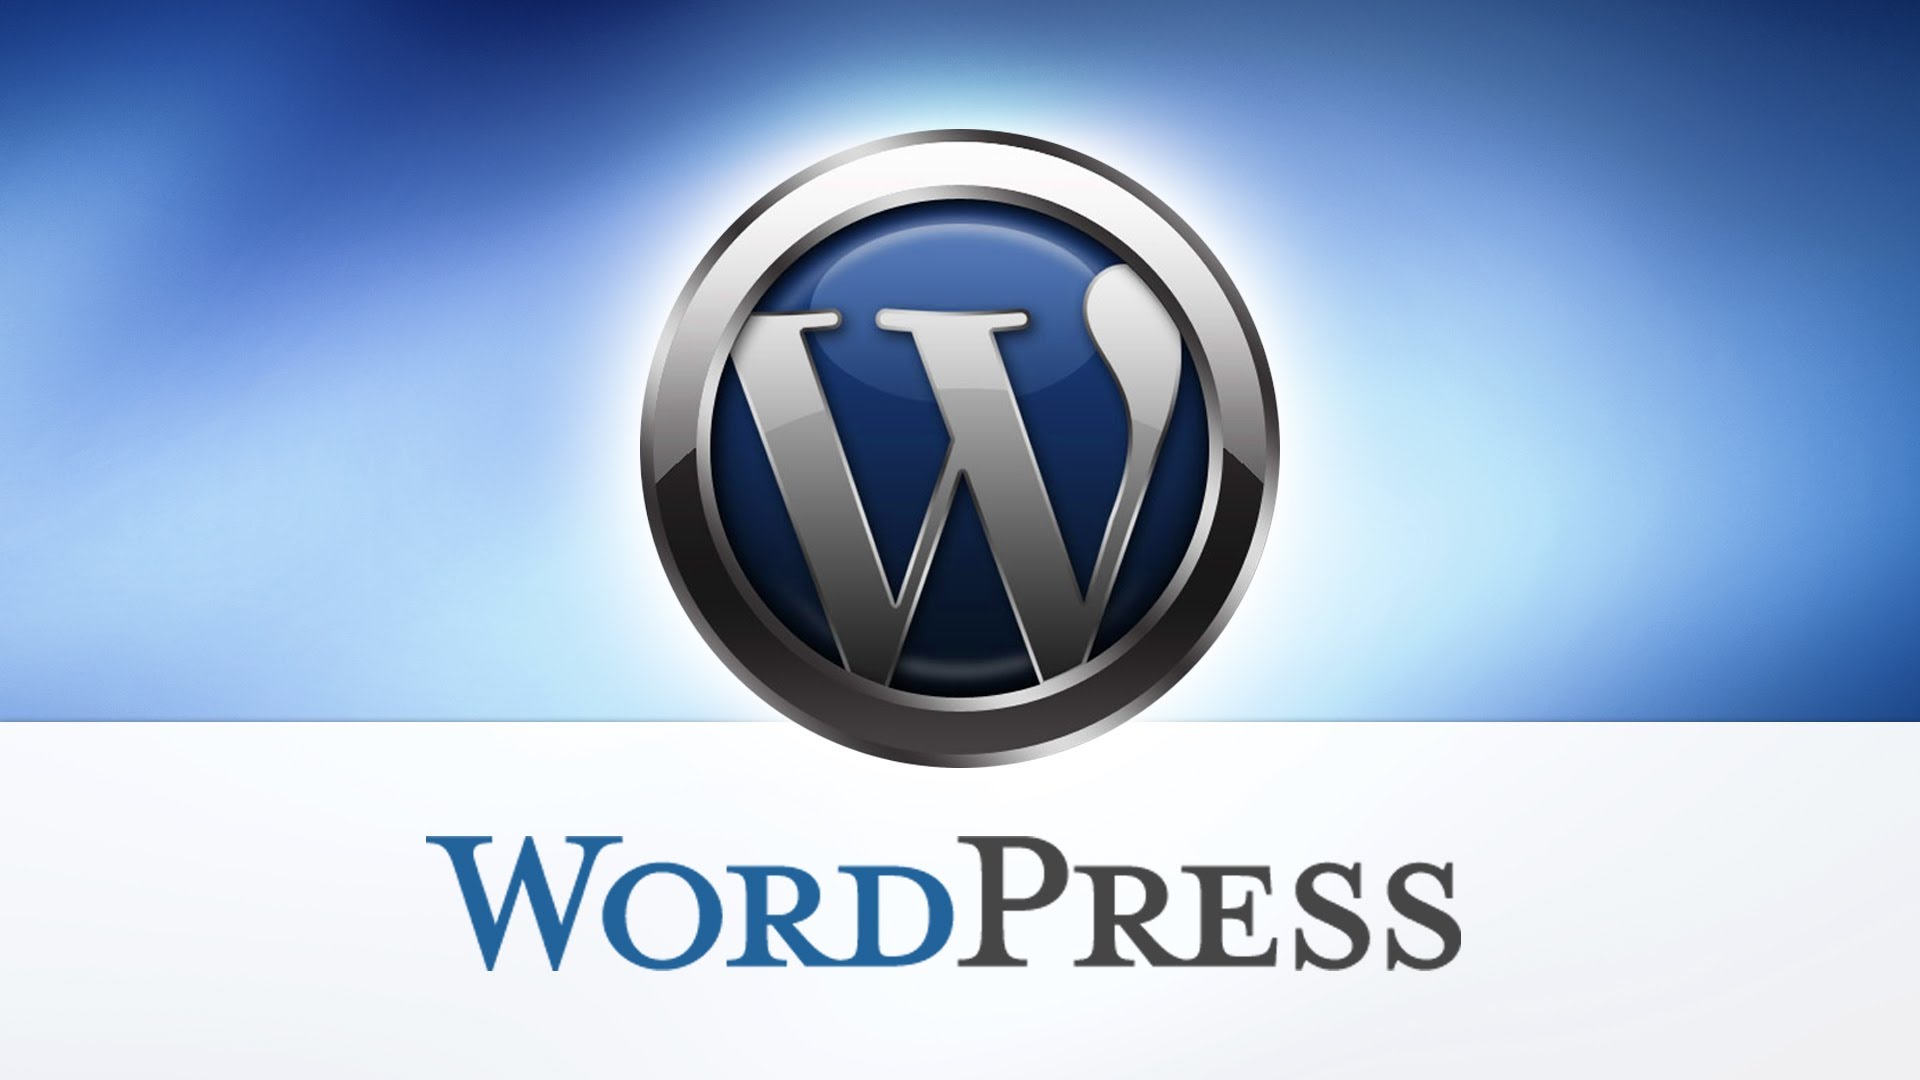 wordpress-logo-1.jpg